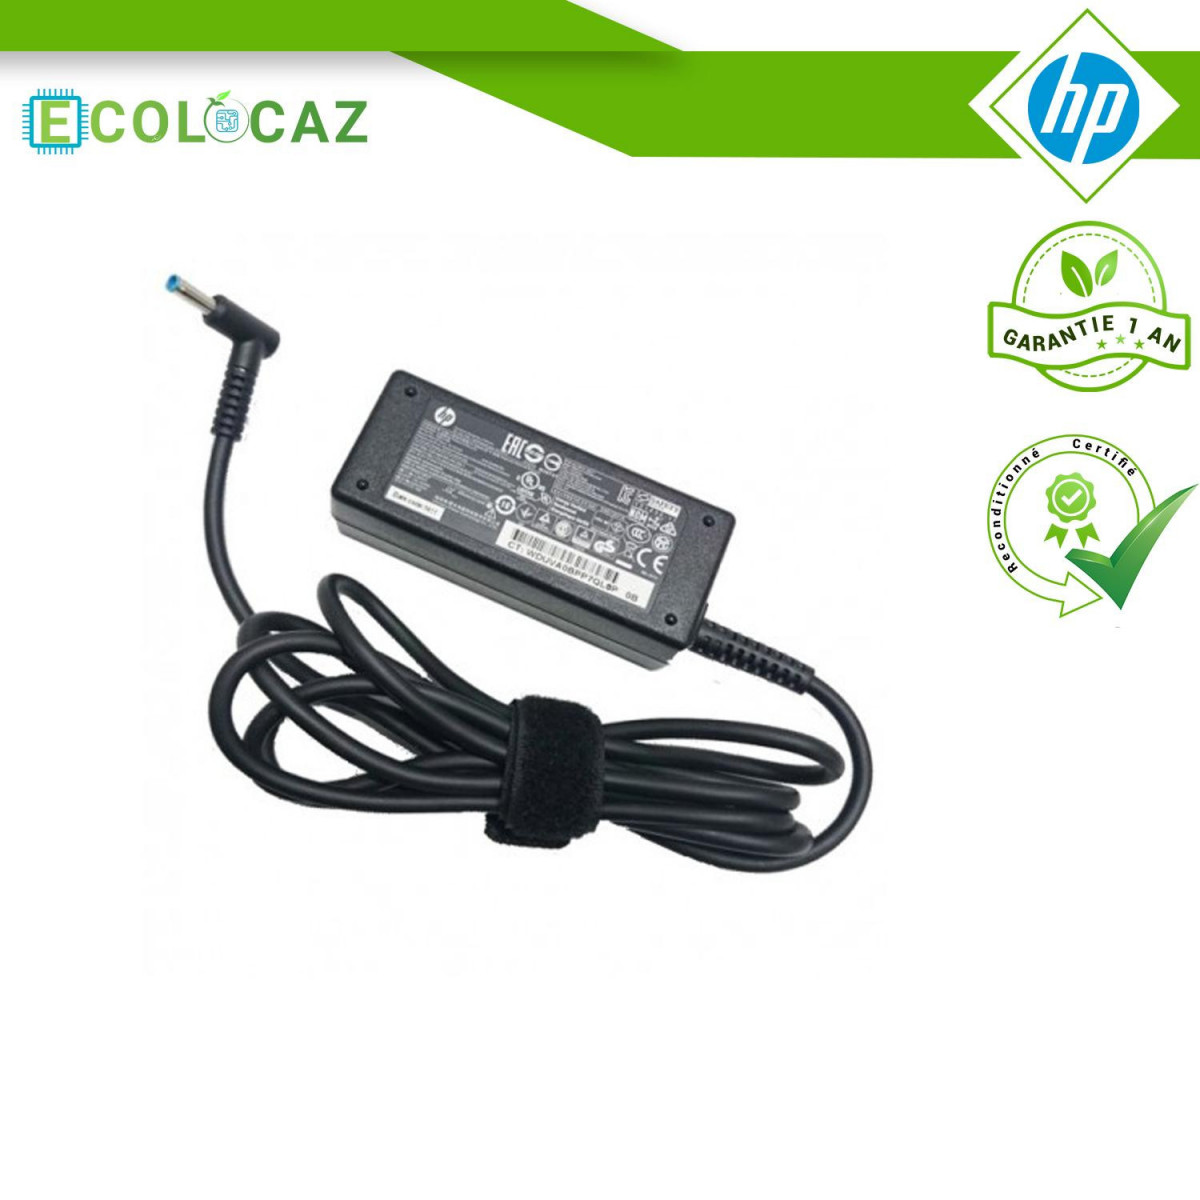 Chargeur HP HSTNN-CA40 740015-002 741727-001 A045R07DH PC Portable